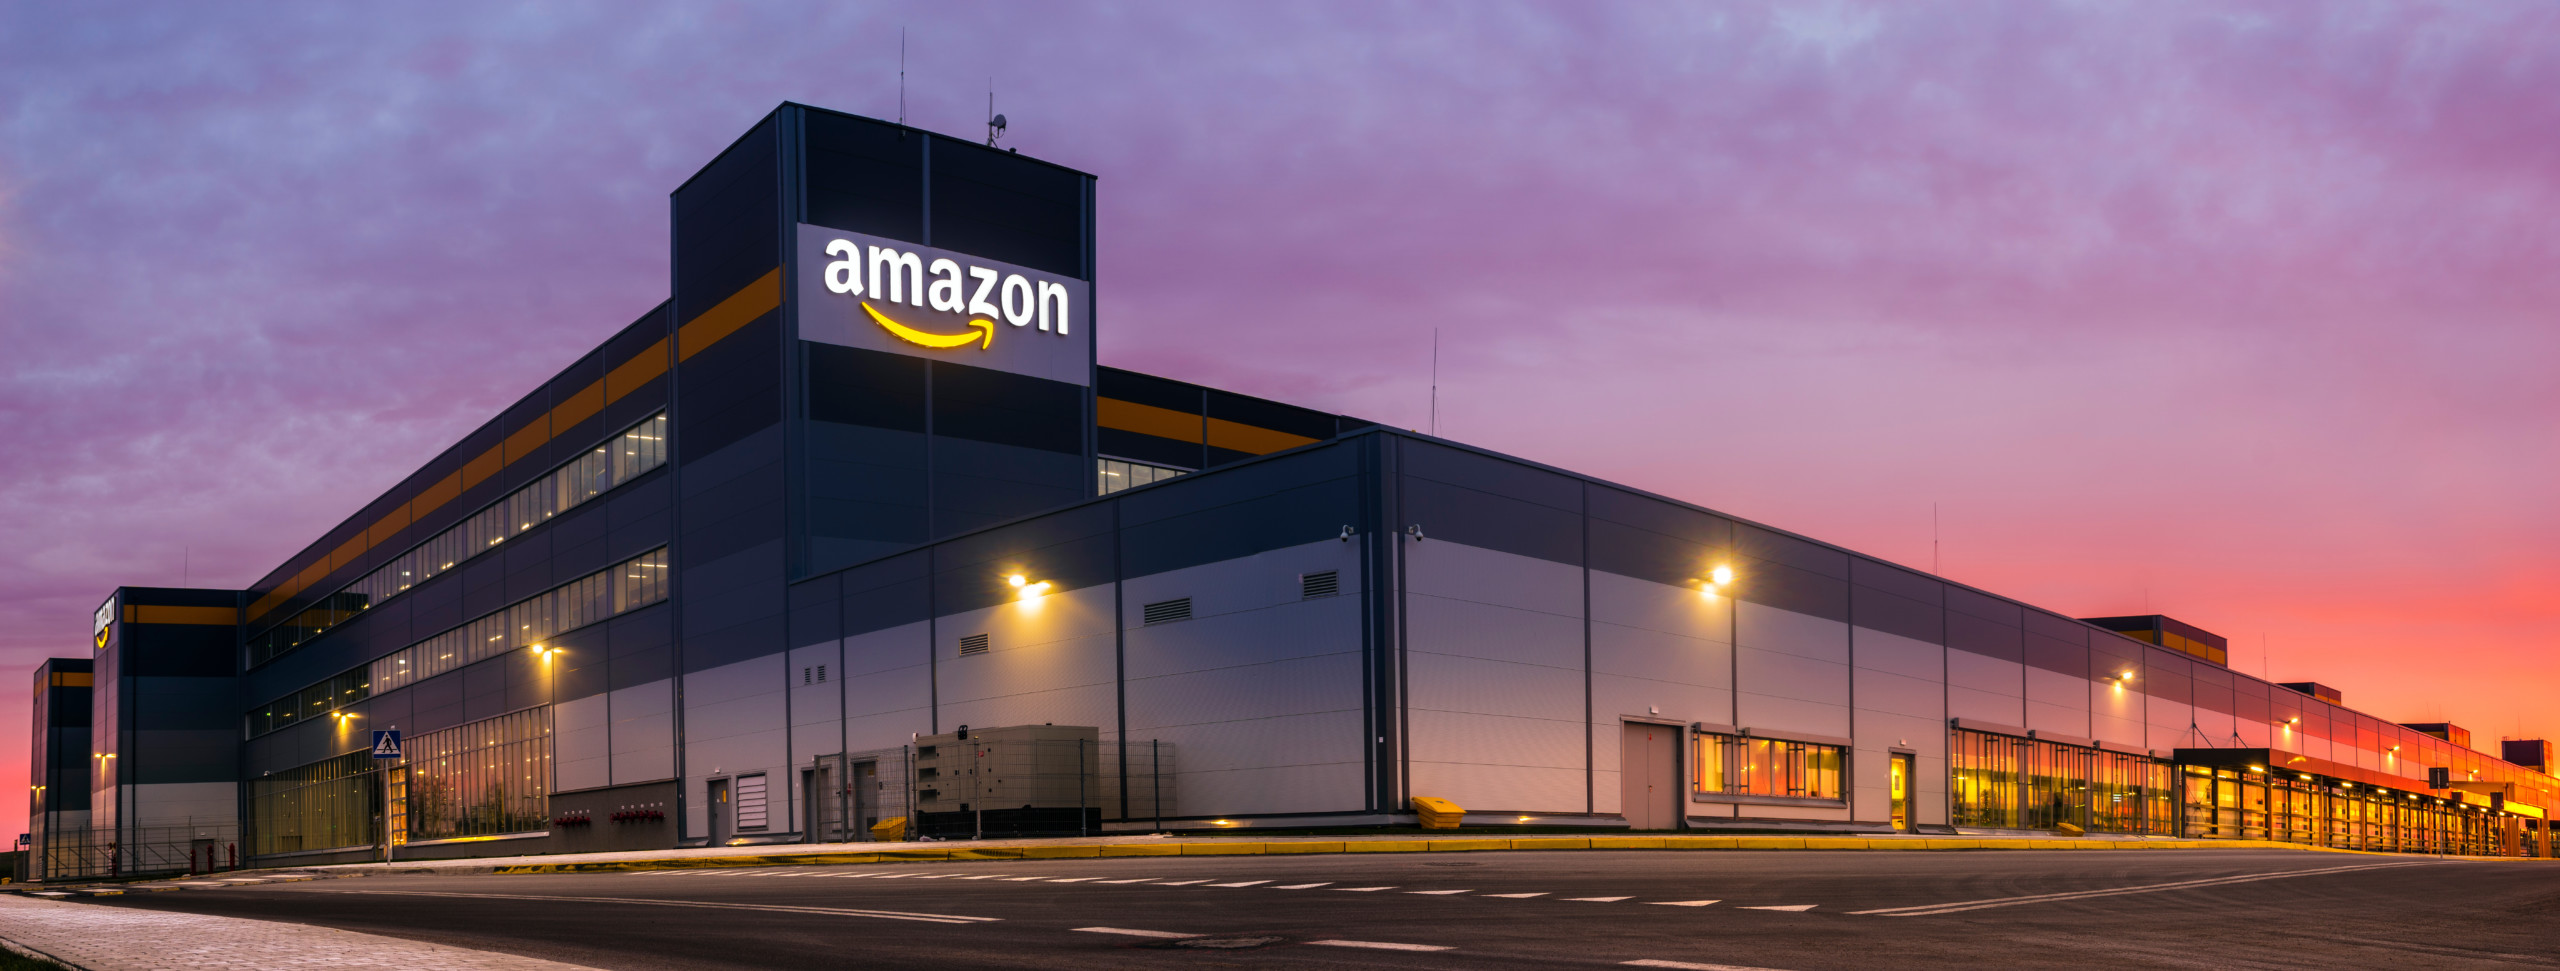 Amazon übertrifft den Umsatz im vierten Quartal, gibt aber einen schwachen Ausblick